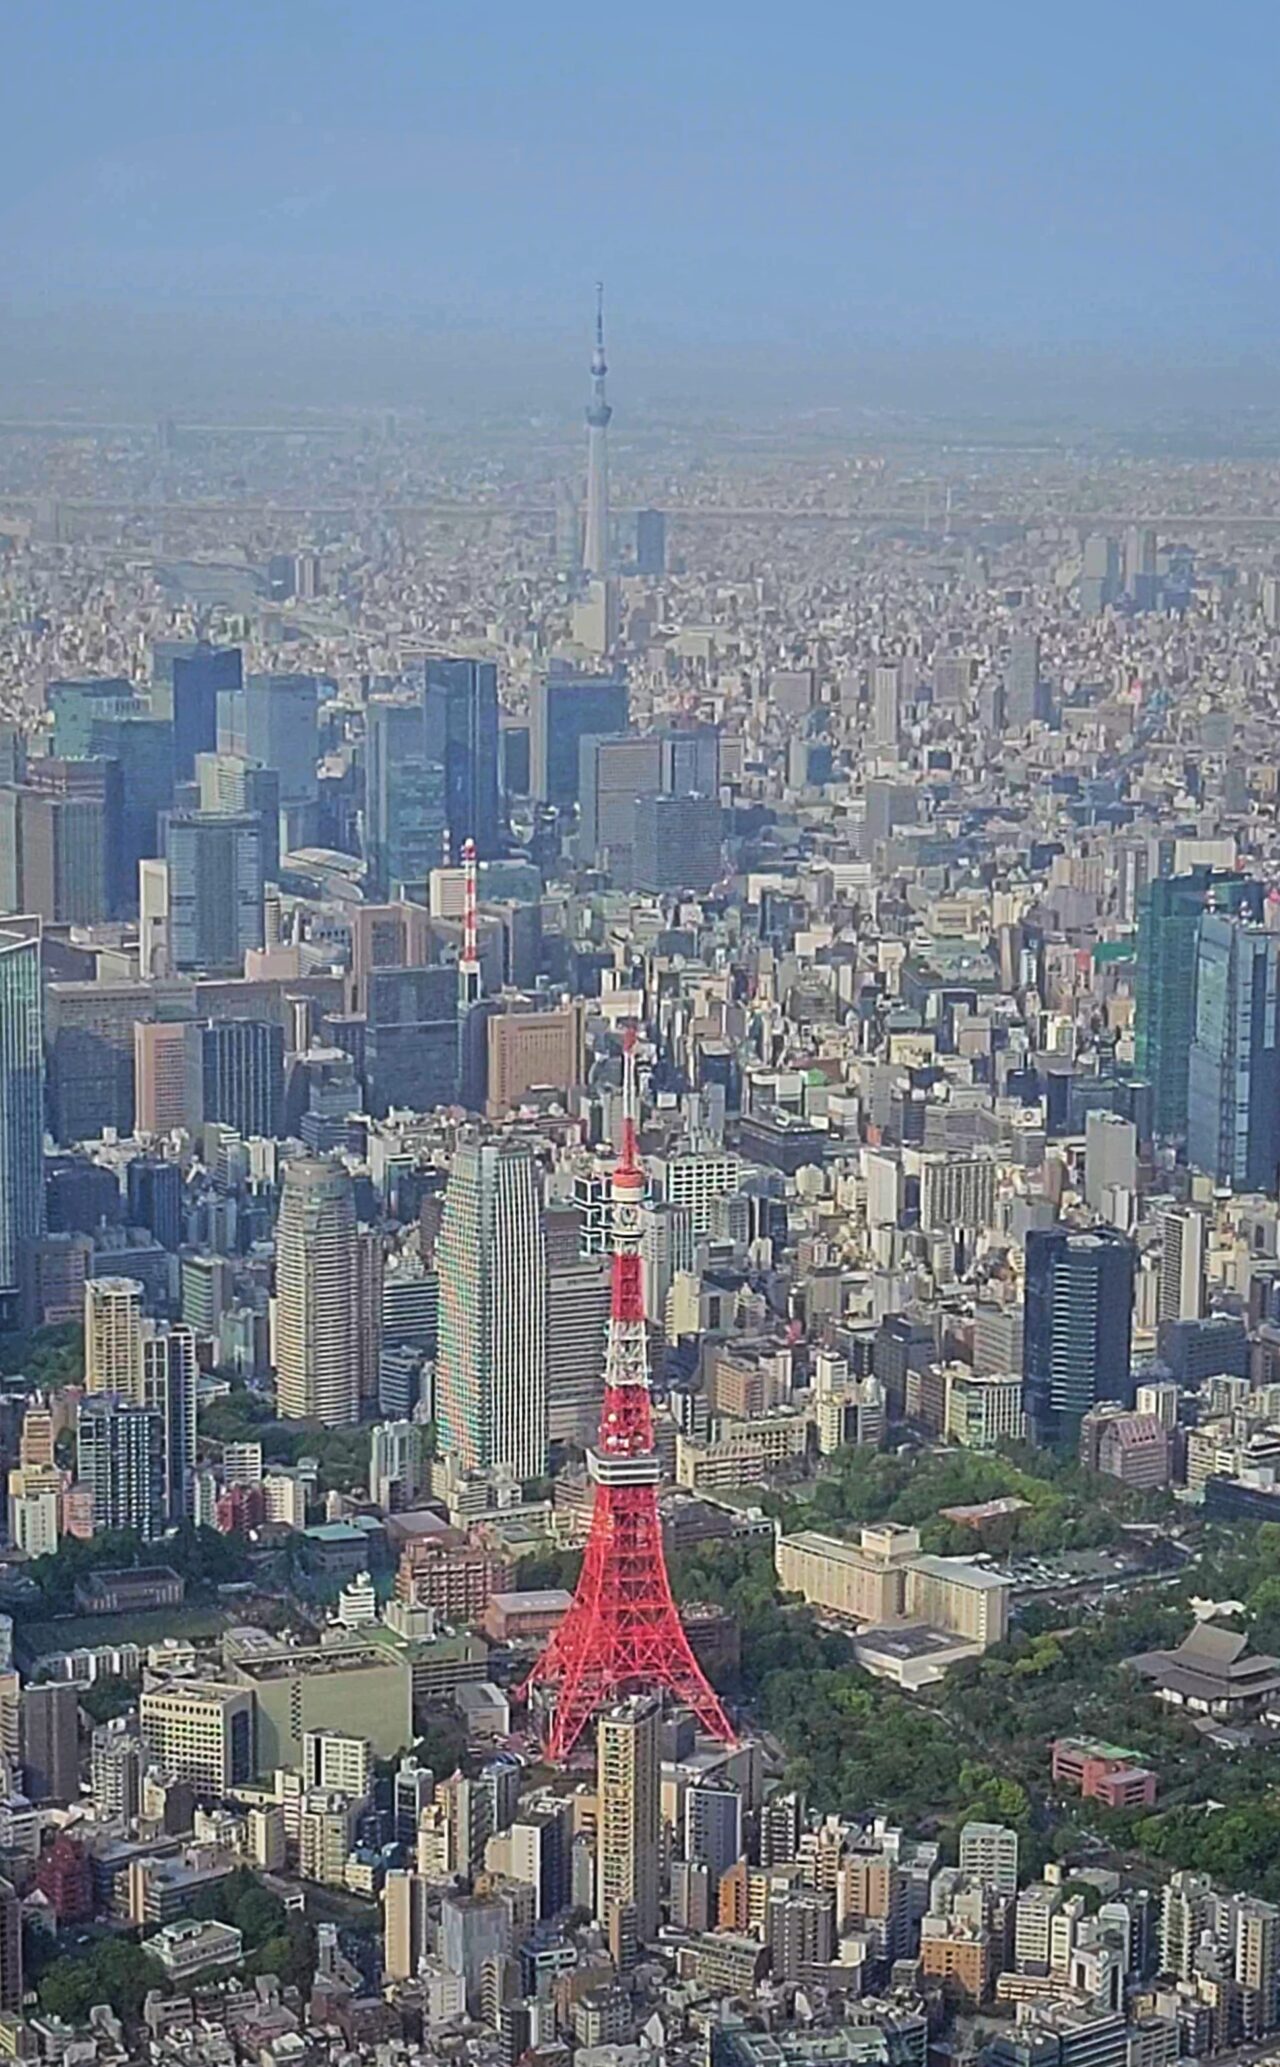 東京タワー、スカイツリー